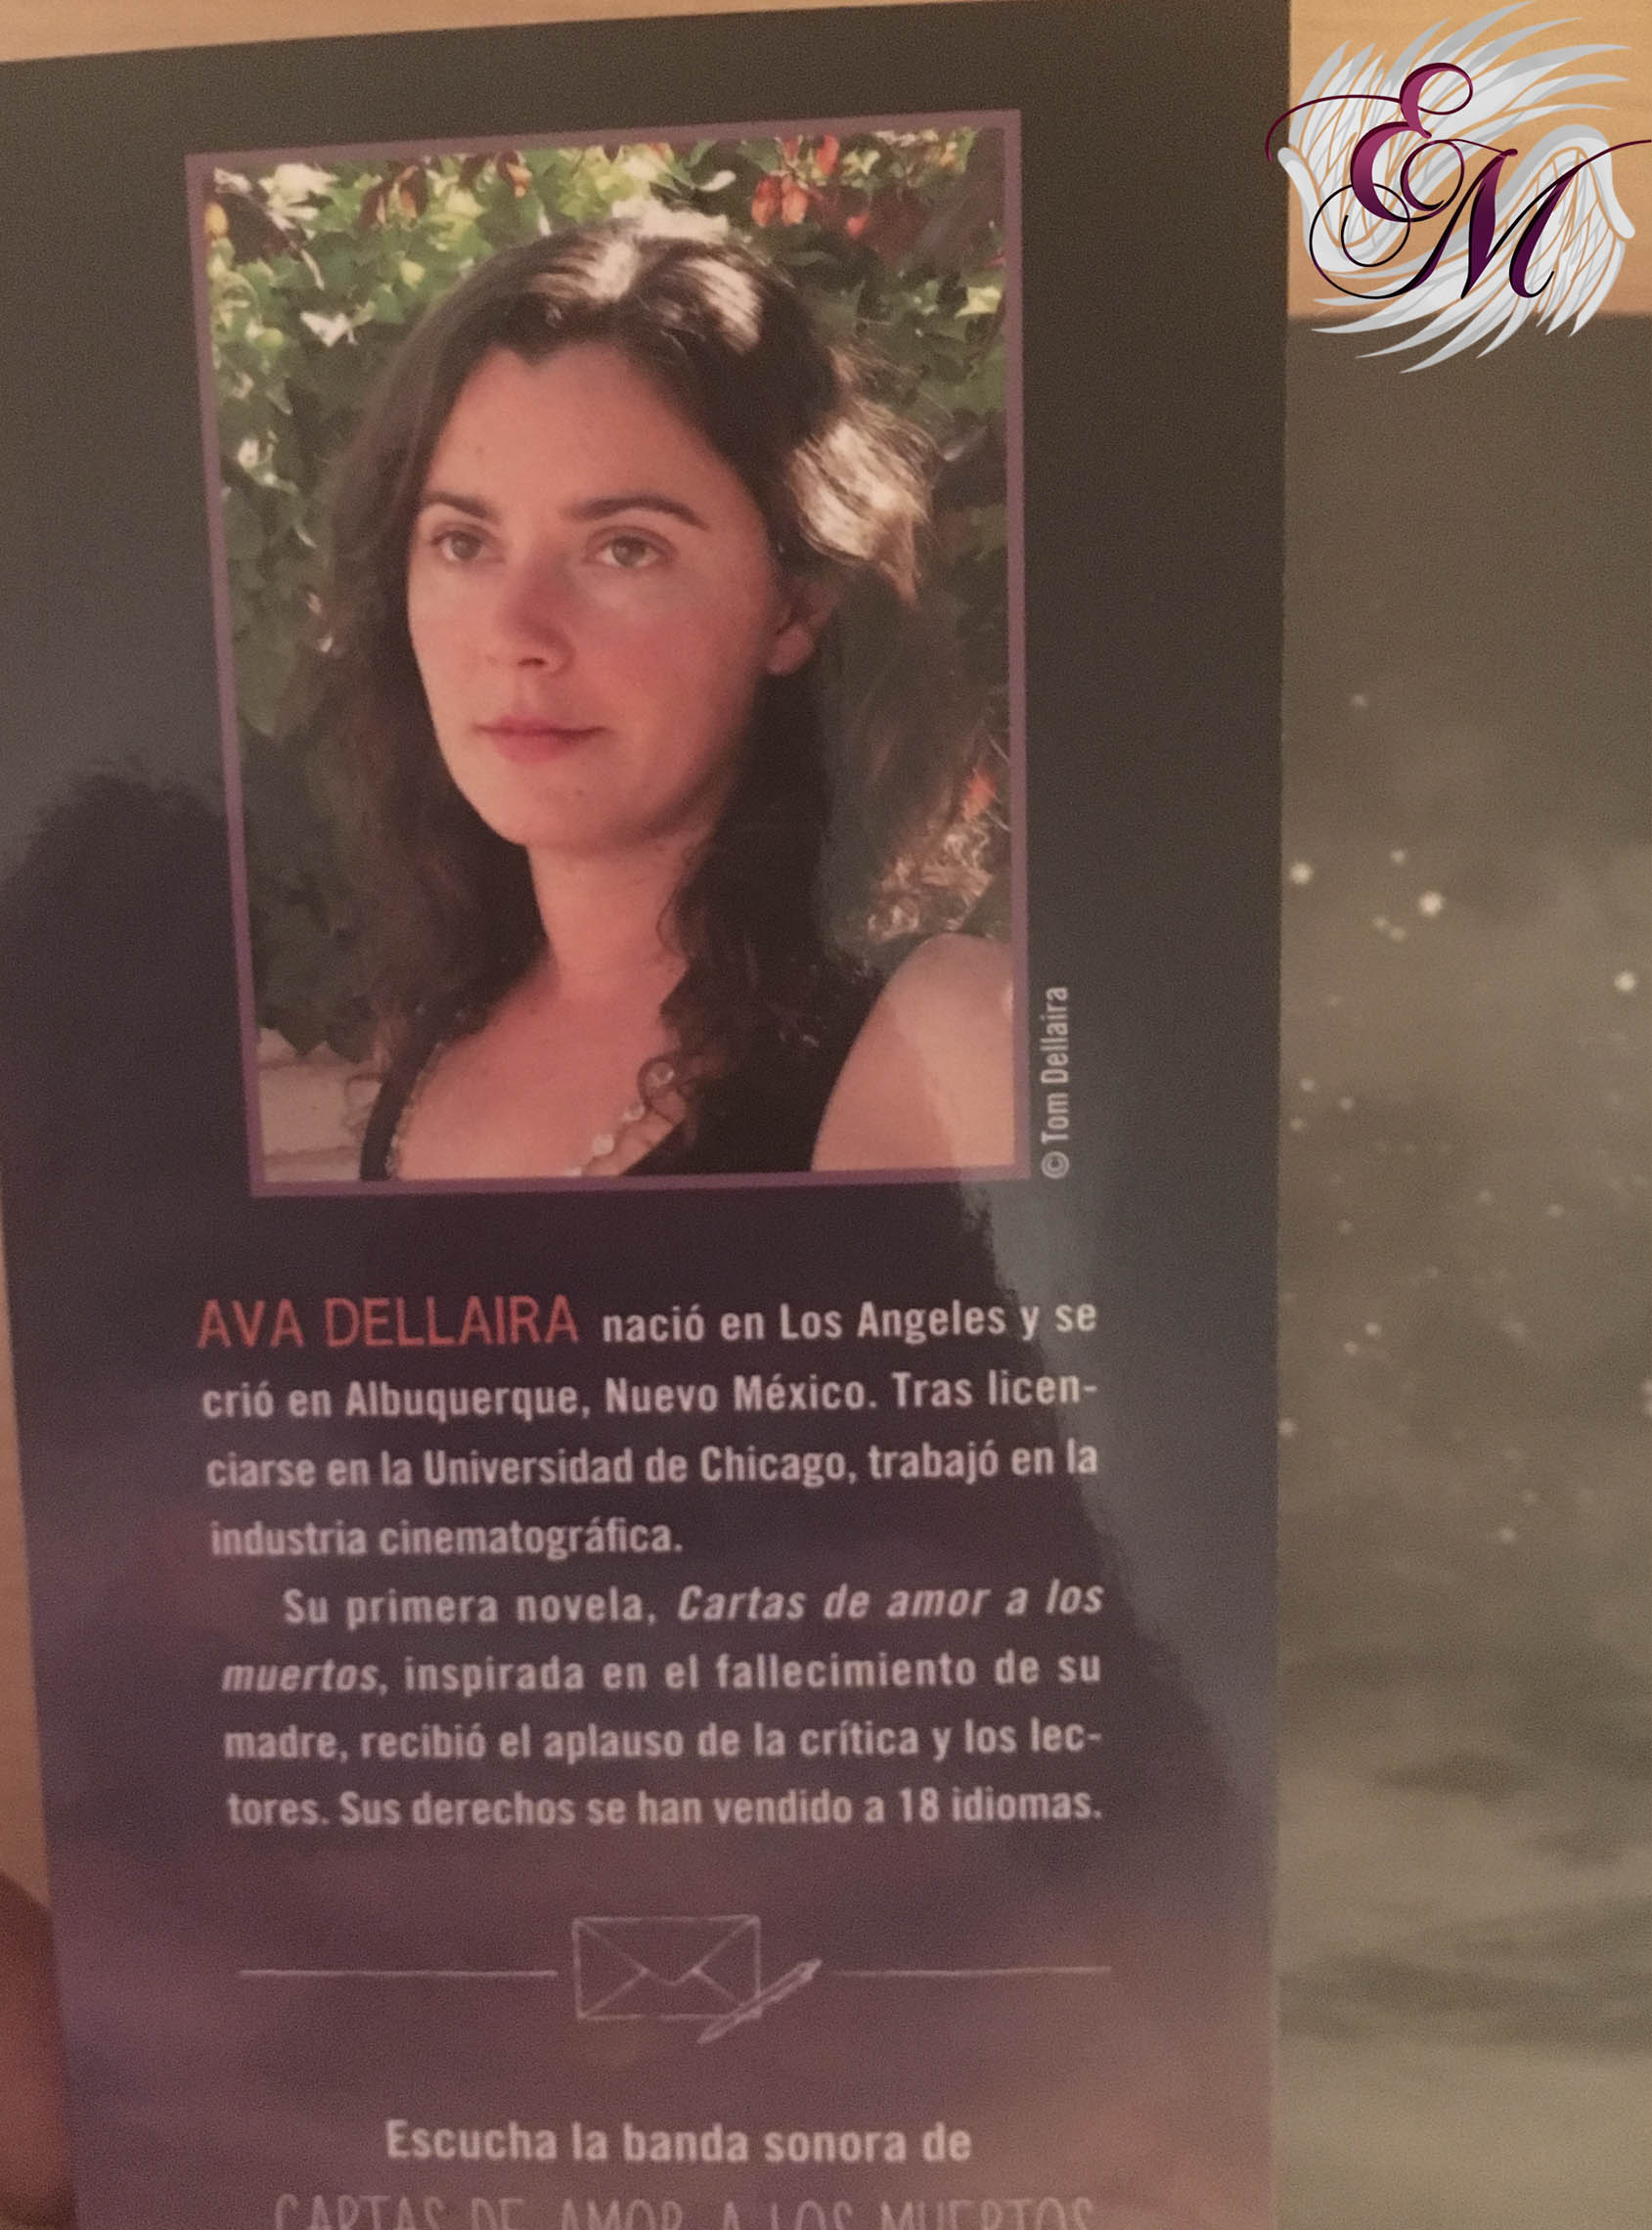 Cartas de amor a los muertos, Ava Dellaira - Reseña